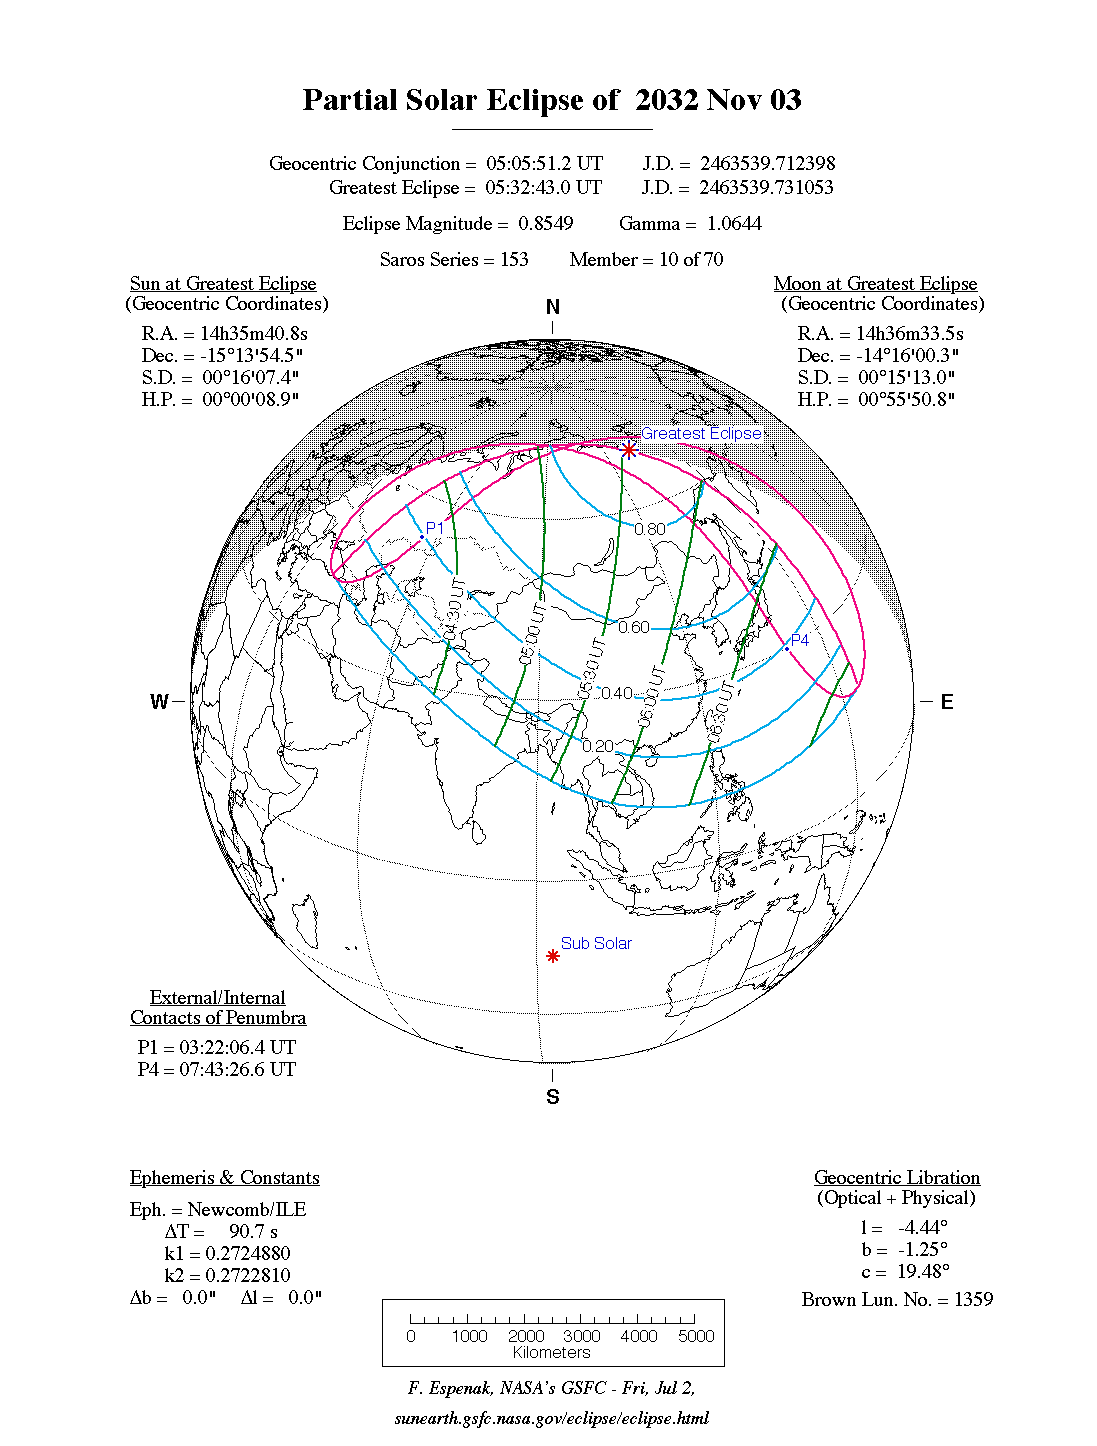 Verlauf der Partiellen Sonnenfinsternis am 03.11.2032